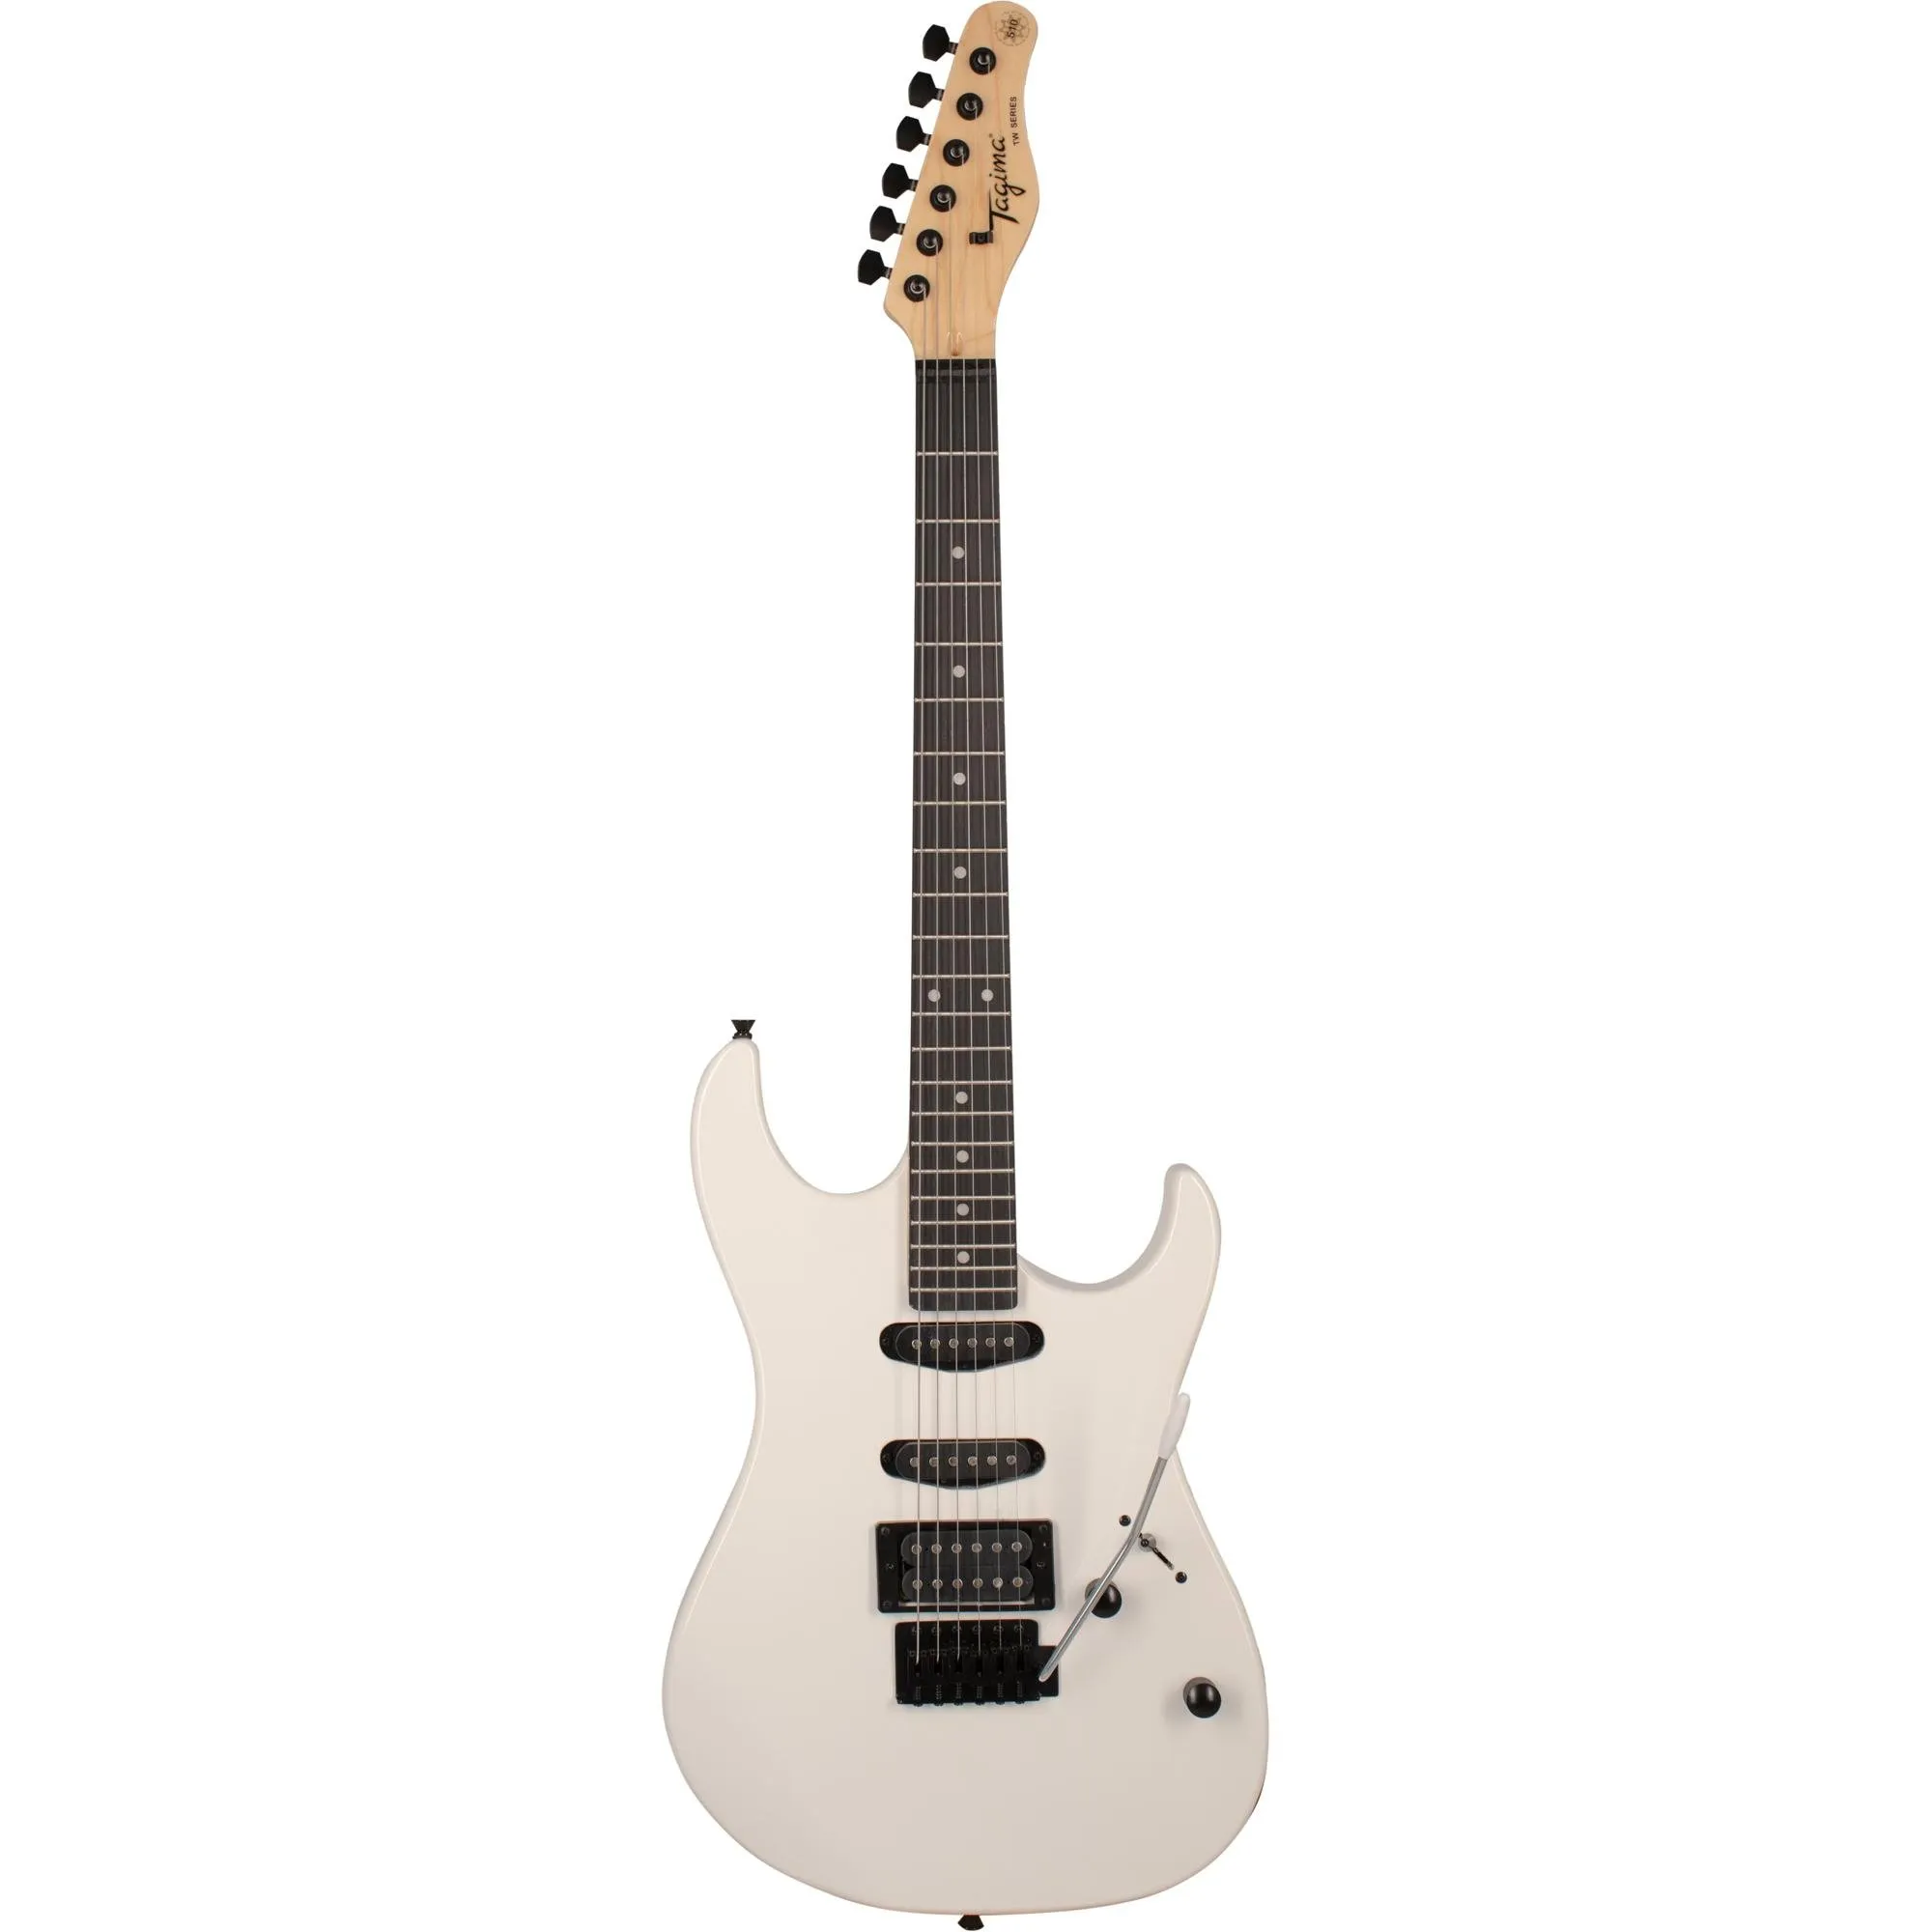 Guitarra Tagima TG-510 White por 956,99 à vista no boleto/pix ou parcele em até 10x sem juros. Compre na loja Mundomax!